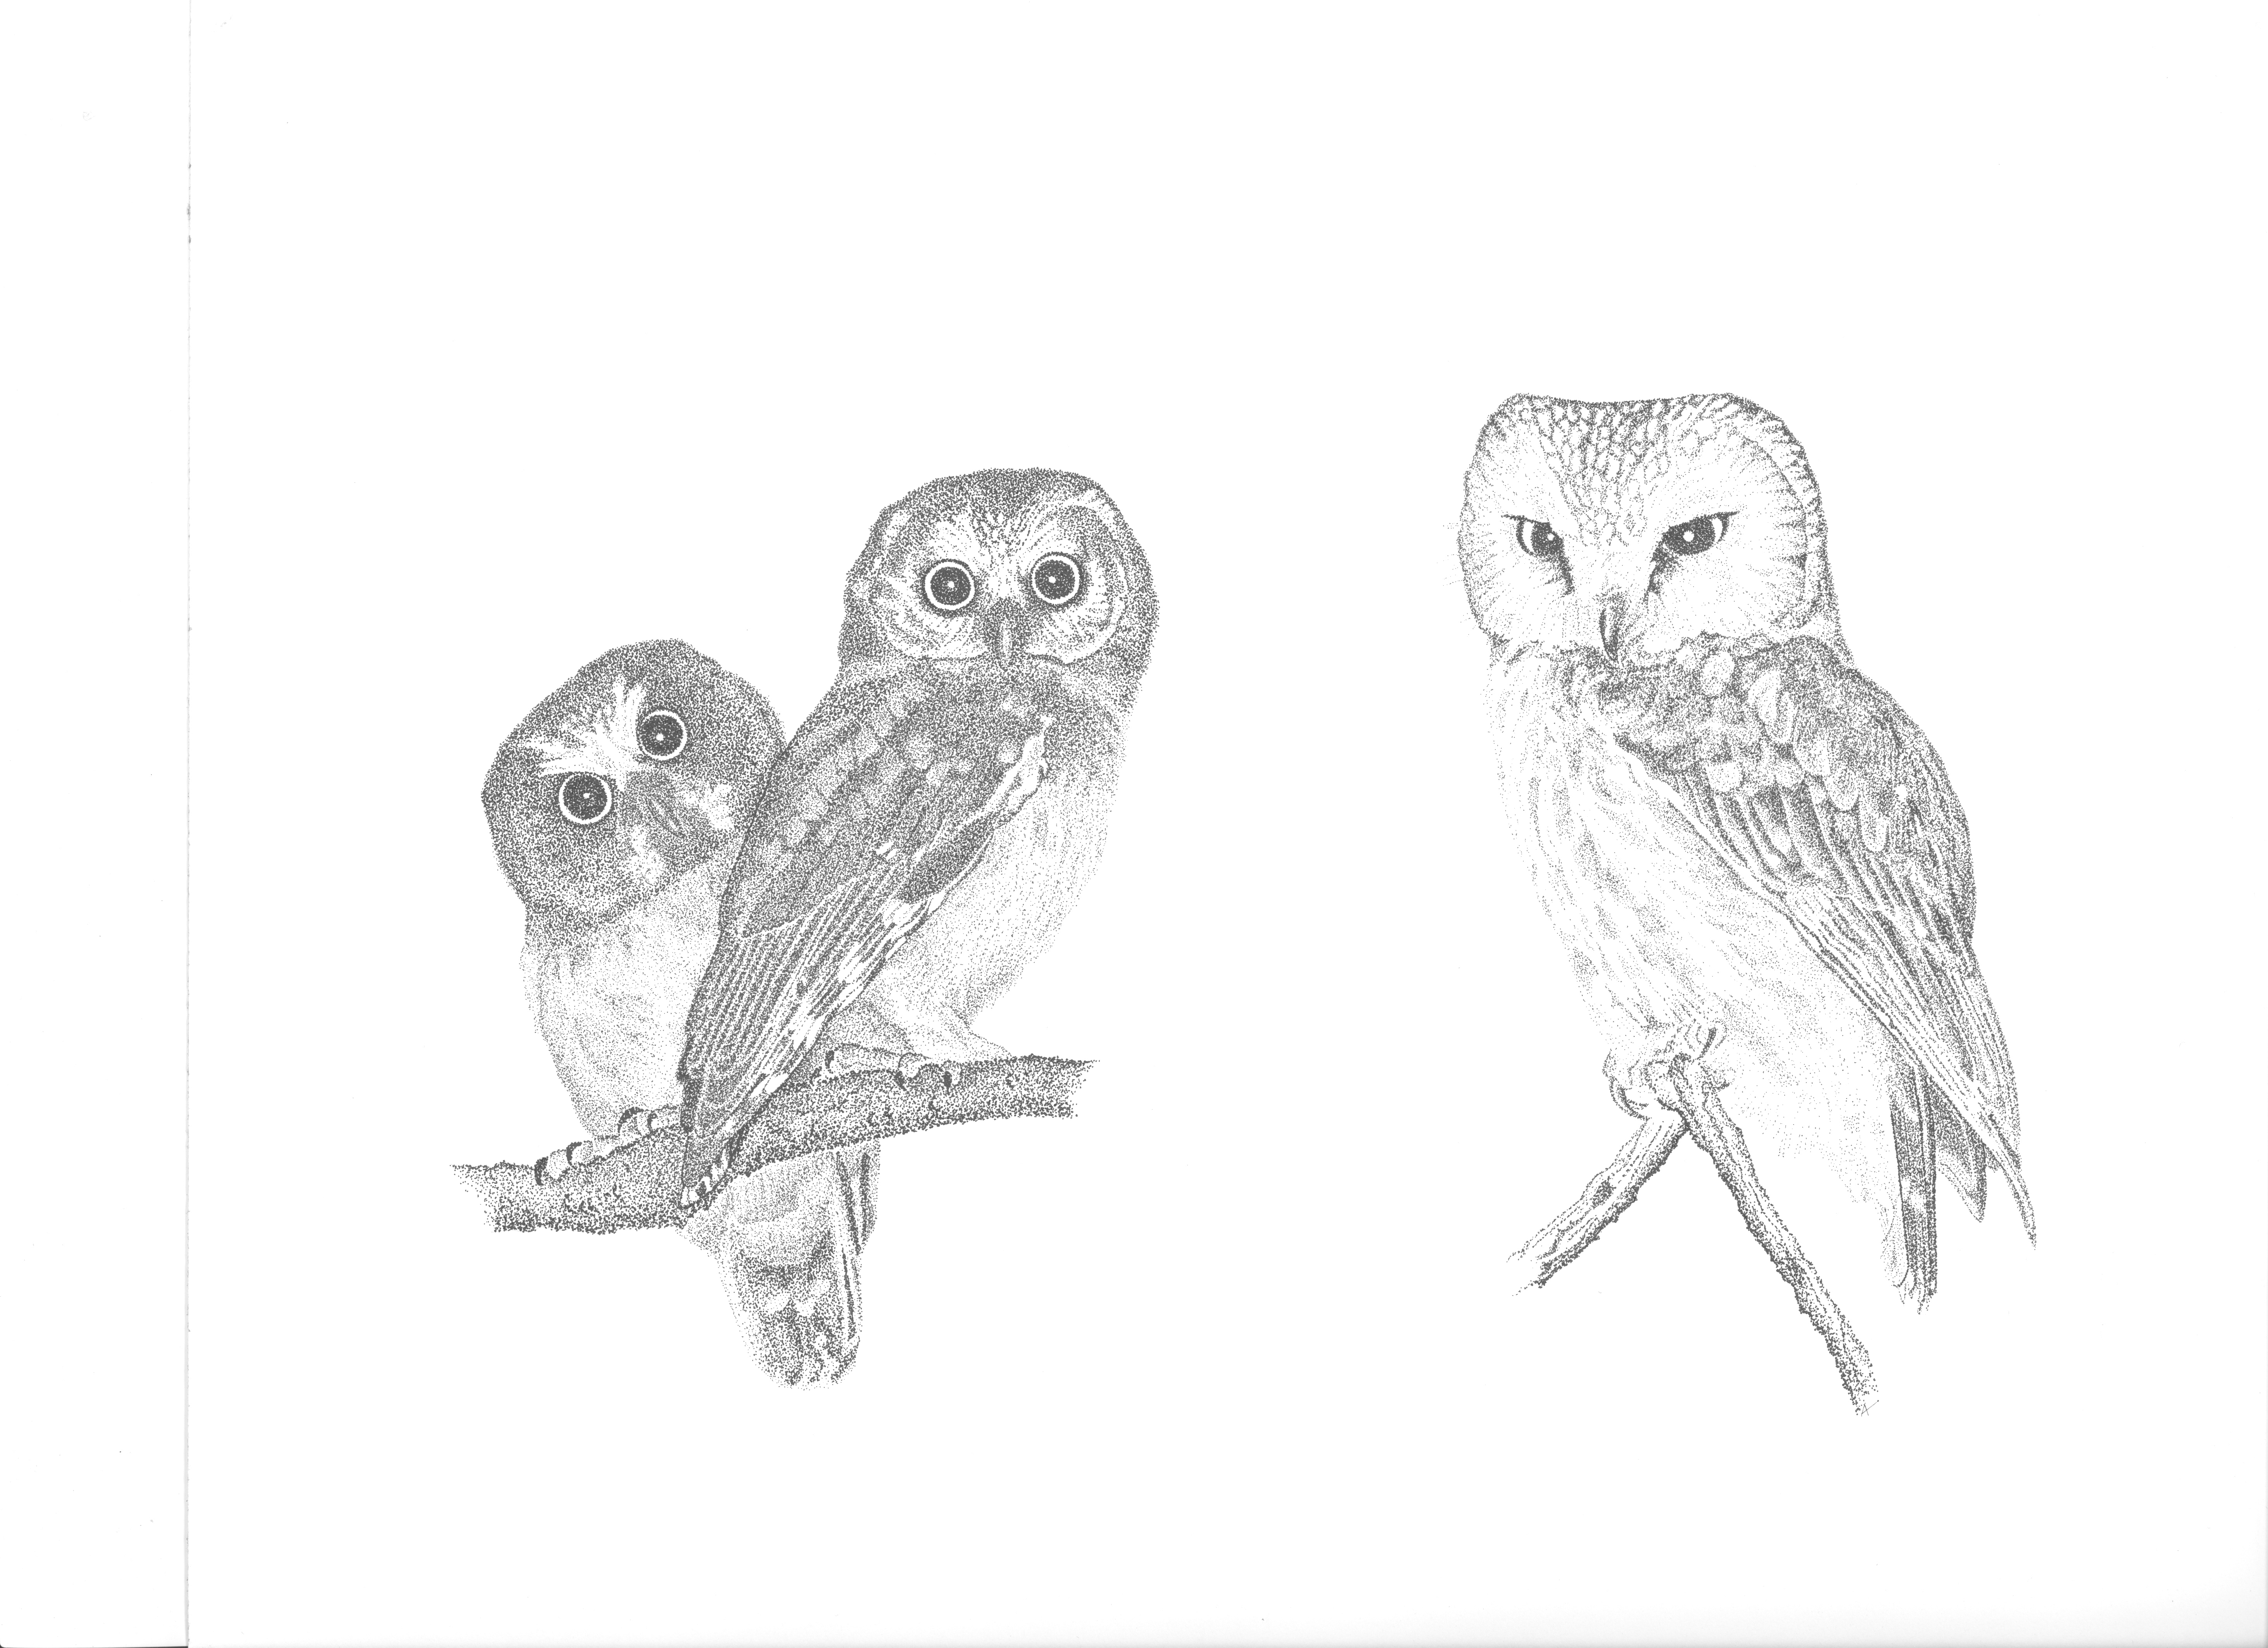  Owl drawings by Adrian Binns.